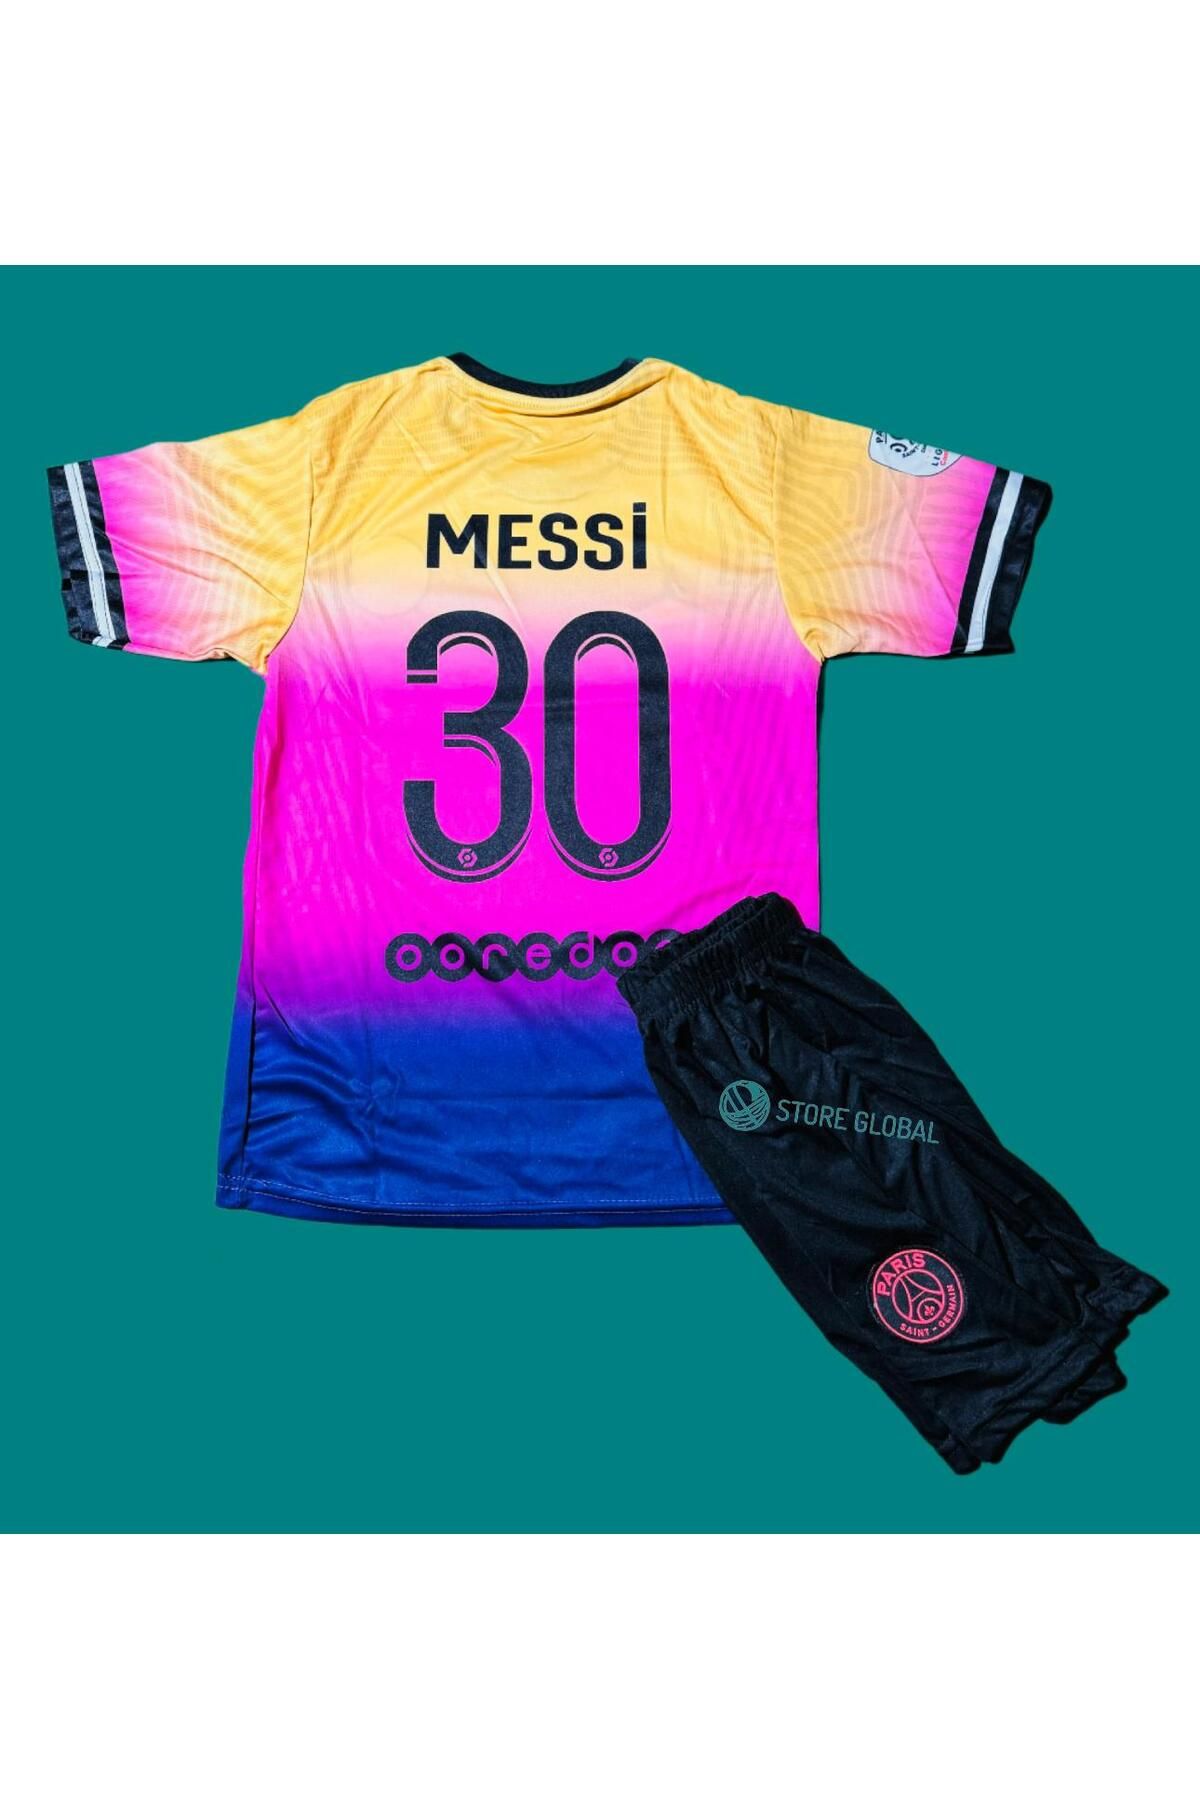 ZİLONG Psg Messi 30 Özel Tasarım Yeni Sezon Çocuk Futbol Forması 2'li Seti